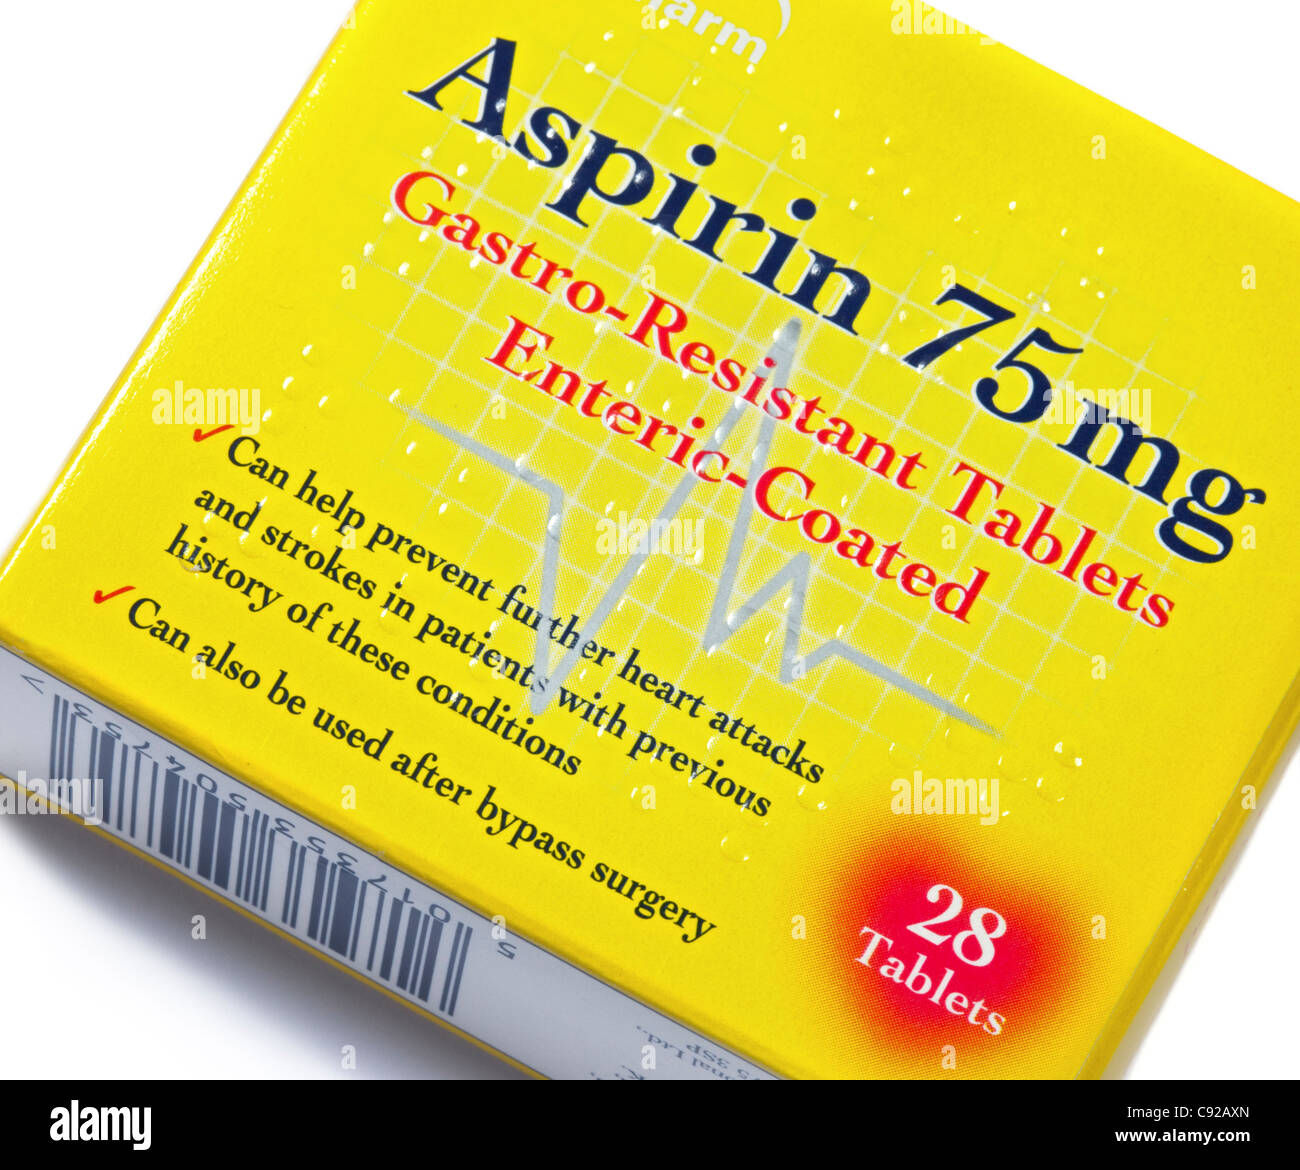 75 mg compresse aspirina utilizzata per controllare i problemi di cuore  Foto stock - Alamy